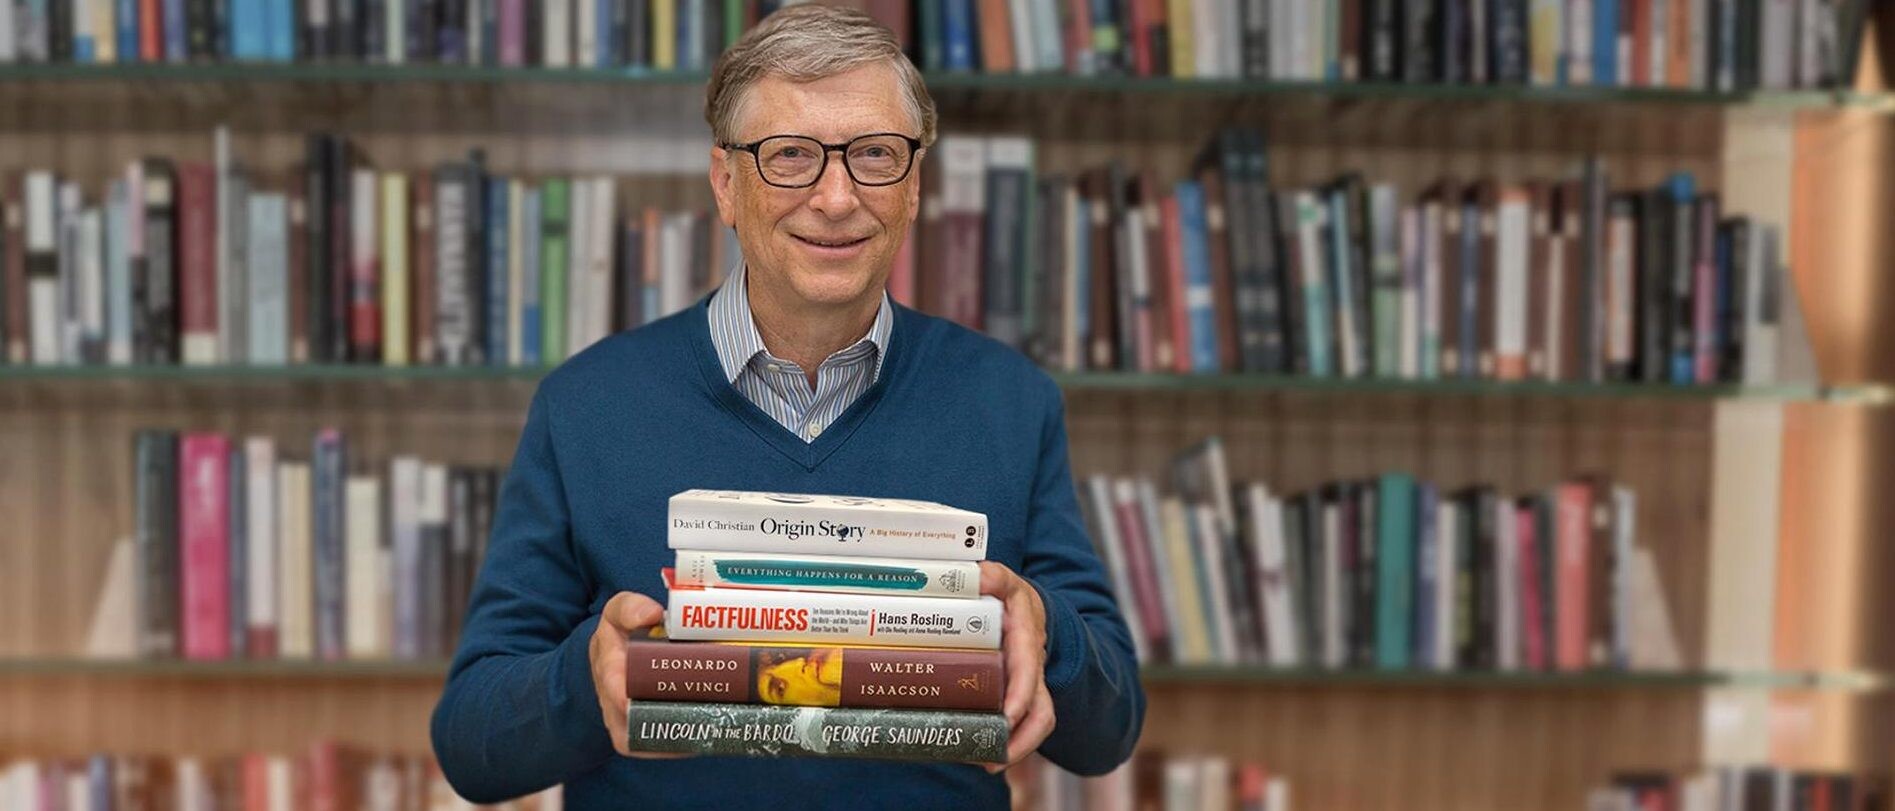 Letné čítanie podľa Billa Gatesa. Týchto 5 kníh odporúča zobrať na dovolenku 2019